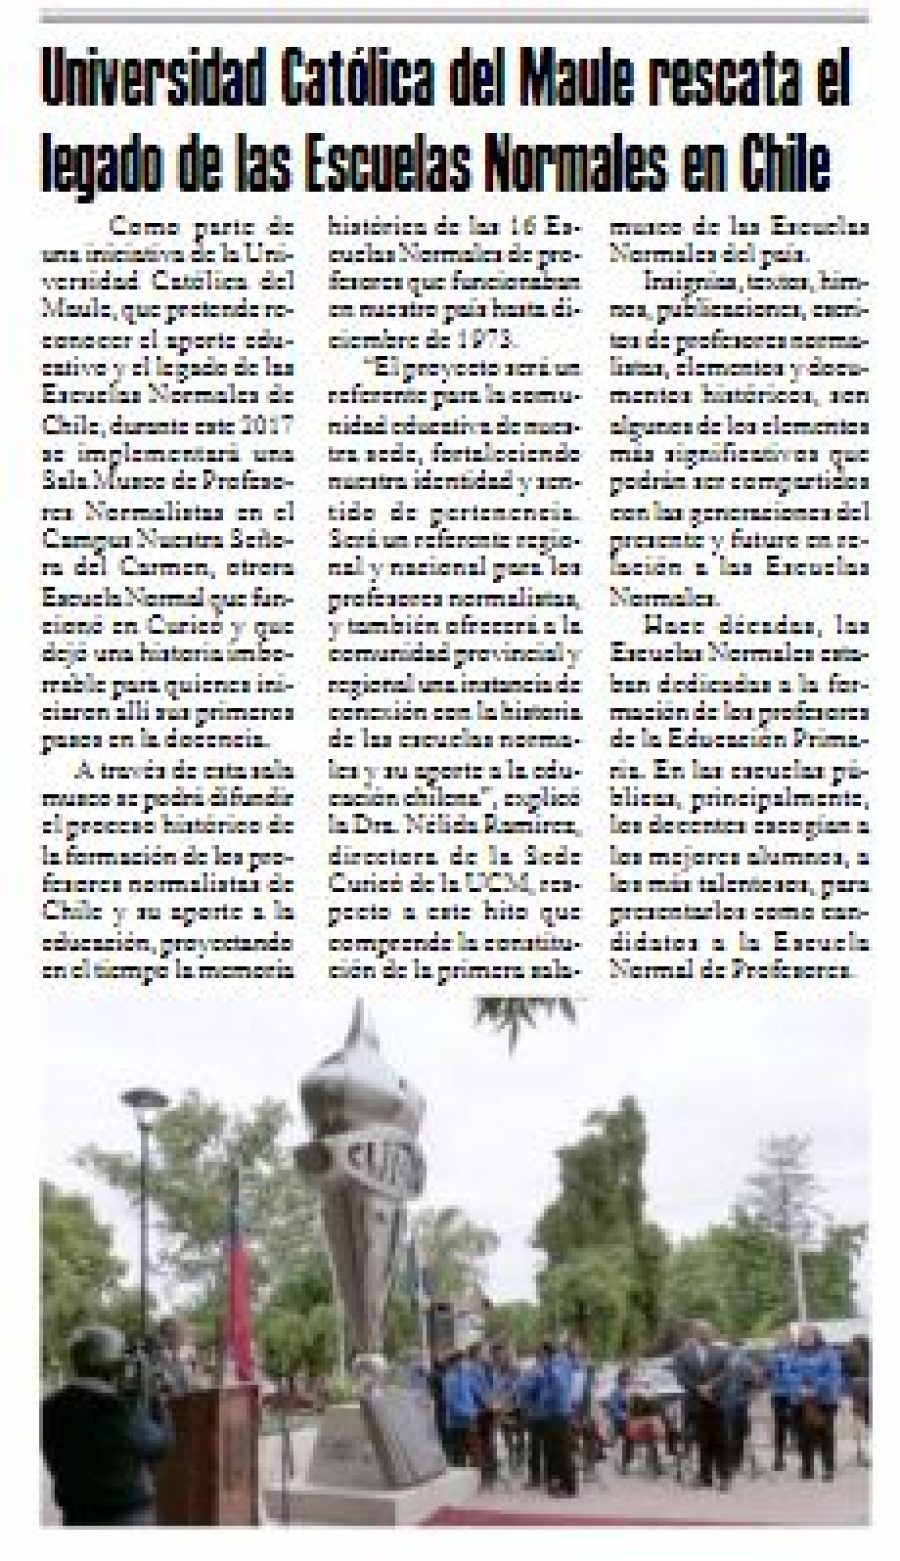 28 de junio en Diario El Heraldo: “Universidad Católica del Maule rescata el legado de las Escuelas Normales en Chile”